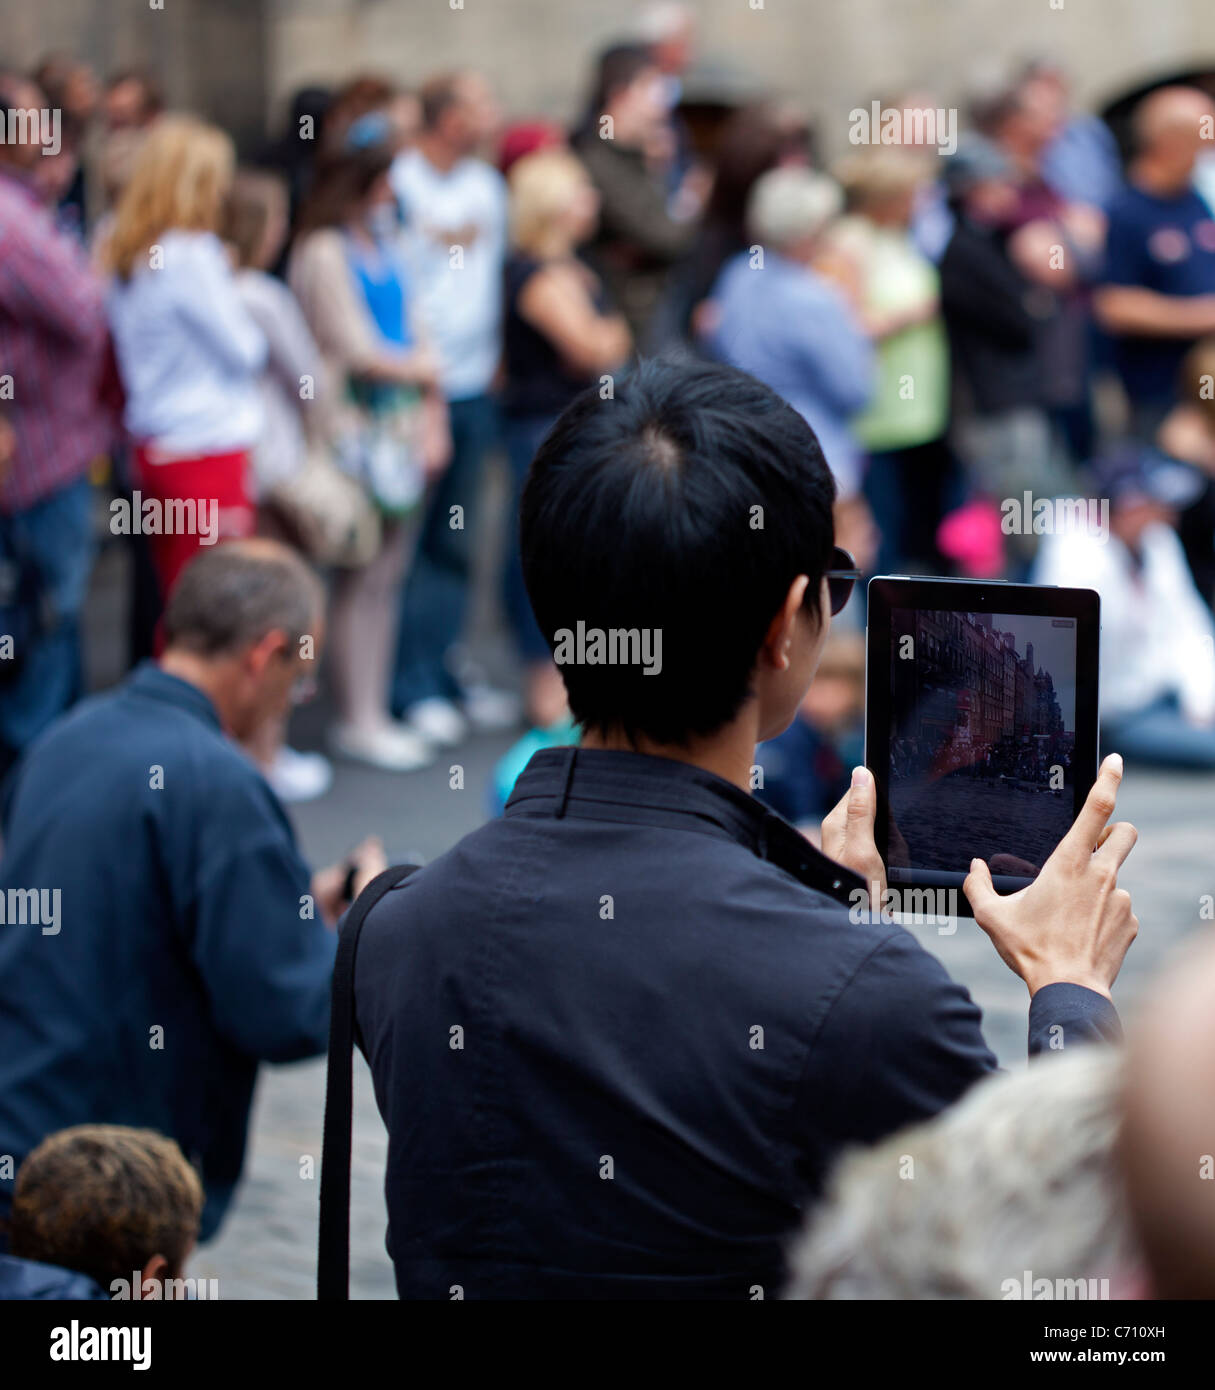 El hombre tomando la fotografía con un tablet Edimburgo Scotland Reino Unido Europa Foto de stock